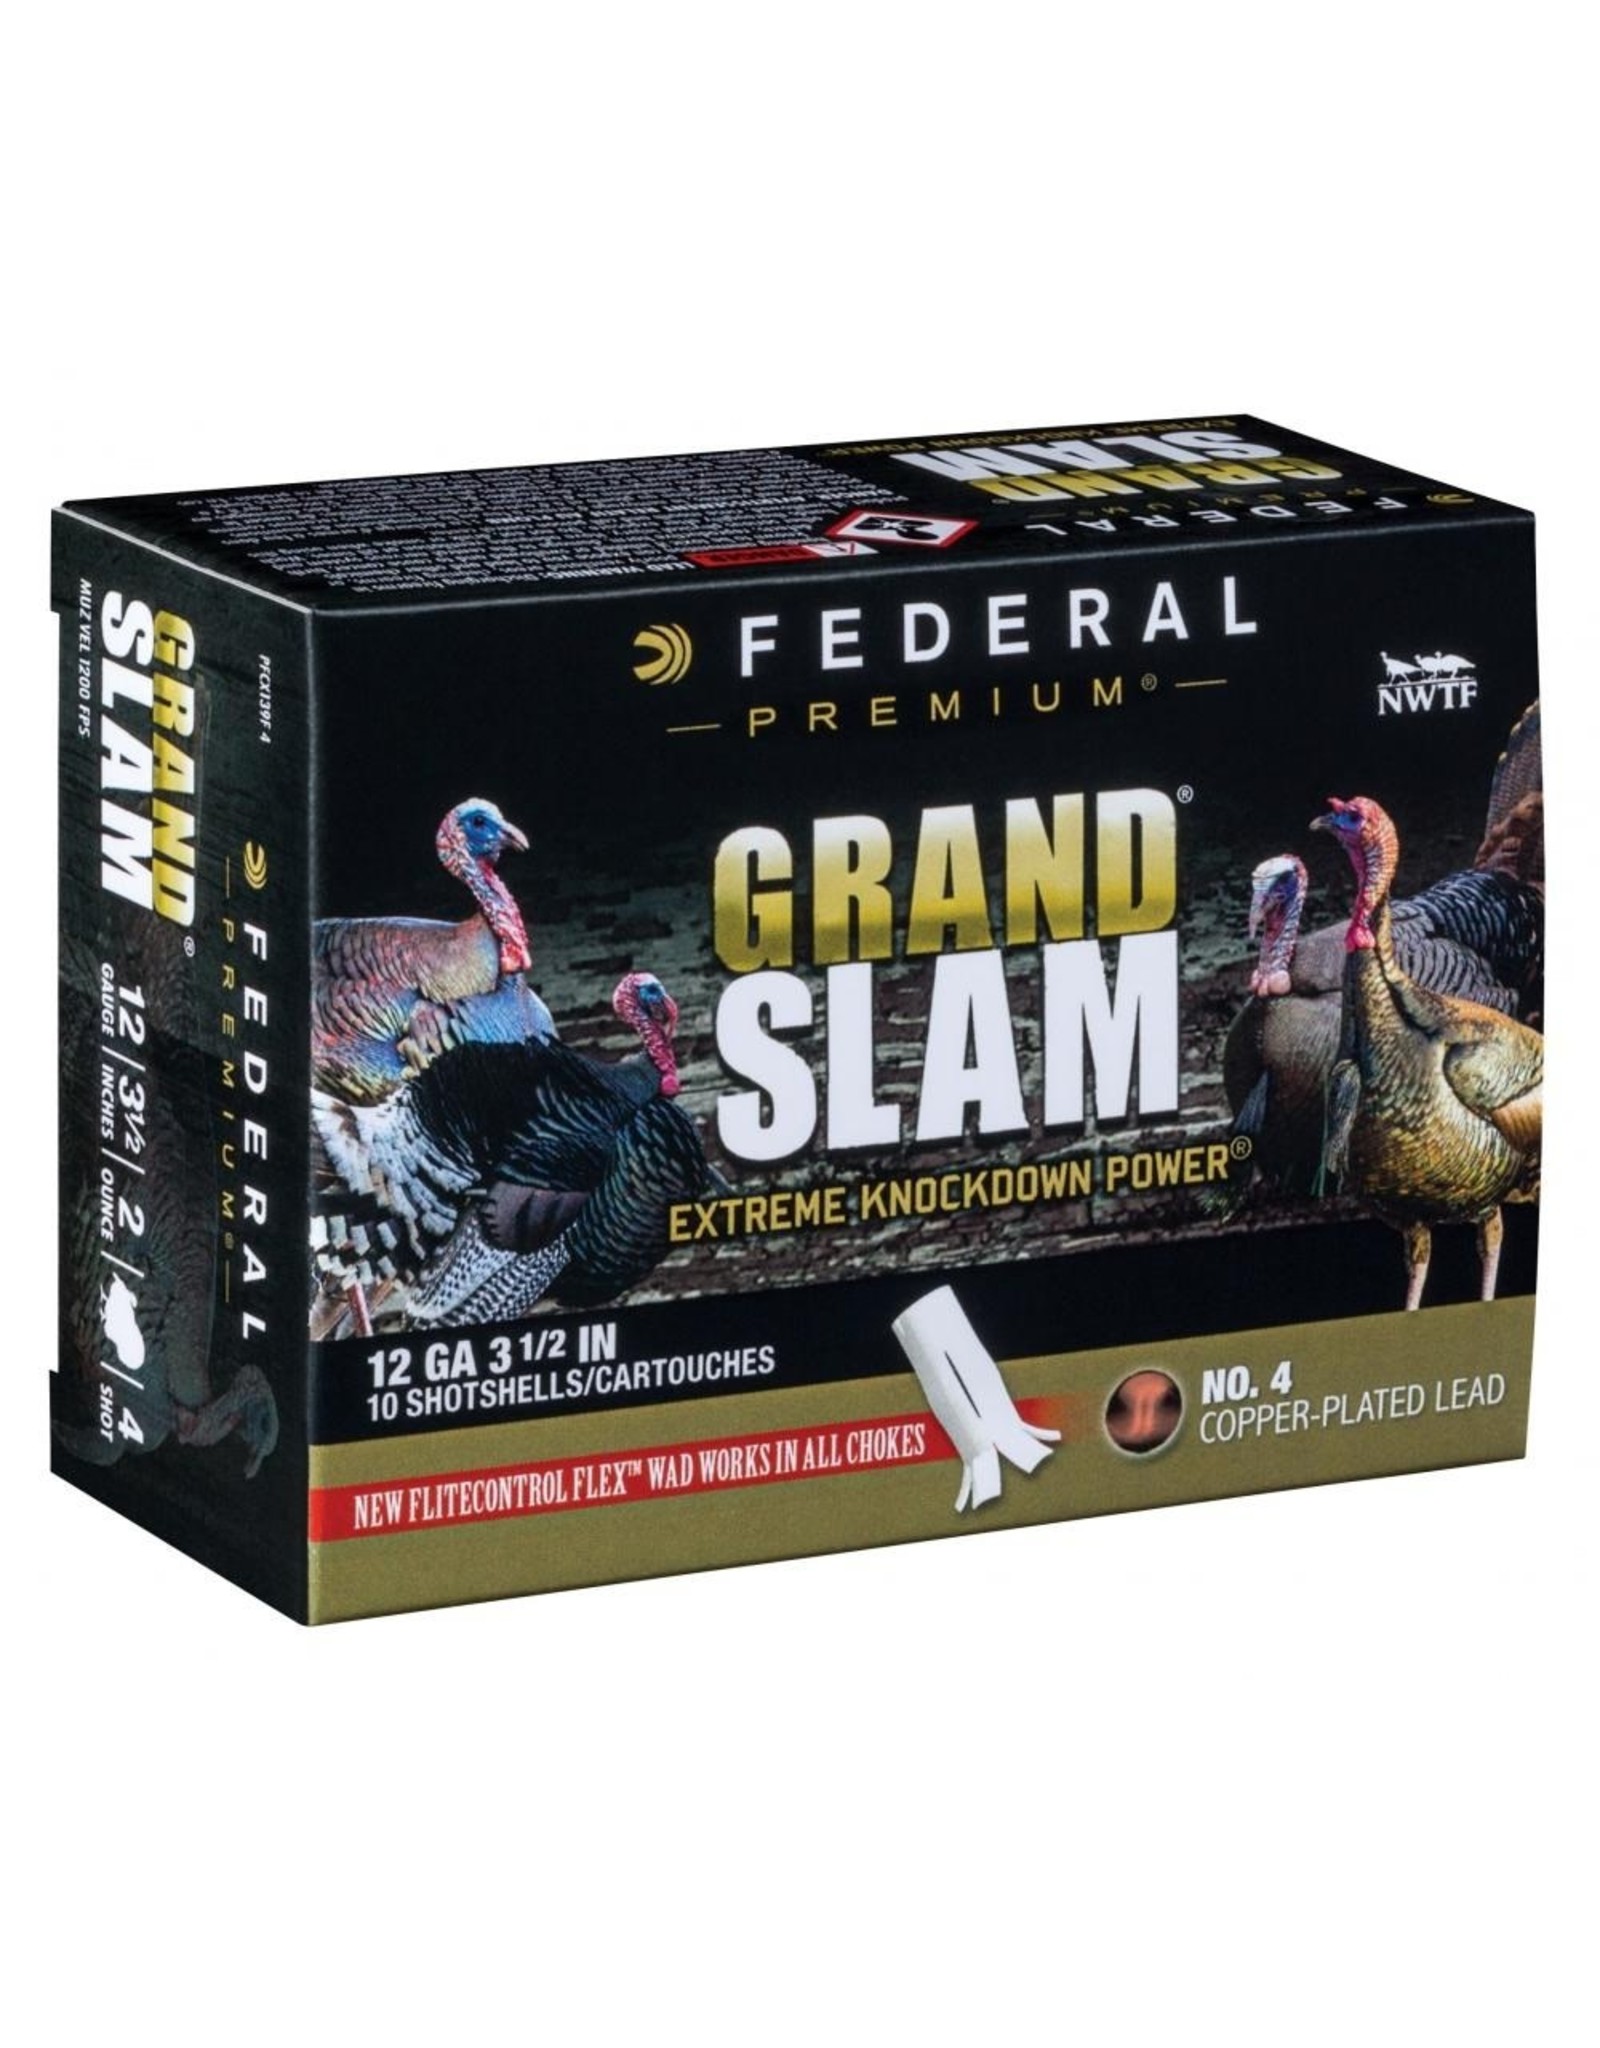 Federal Federal PFCX156F 5 Grandslam Turkey Shotshell w/ Flight Control Flex Wad 12 GA 2 3/4" MAX. 1 1/2oz 5 10 Rnd per Box